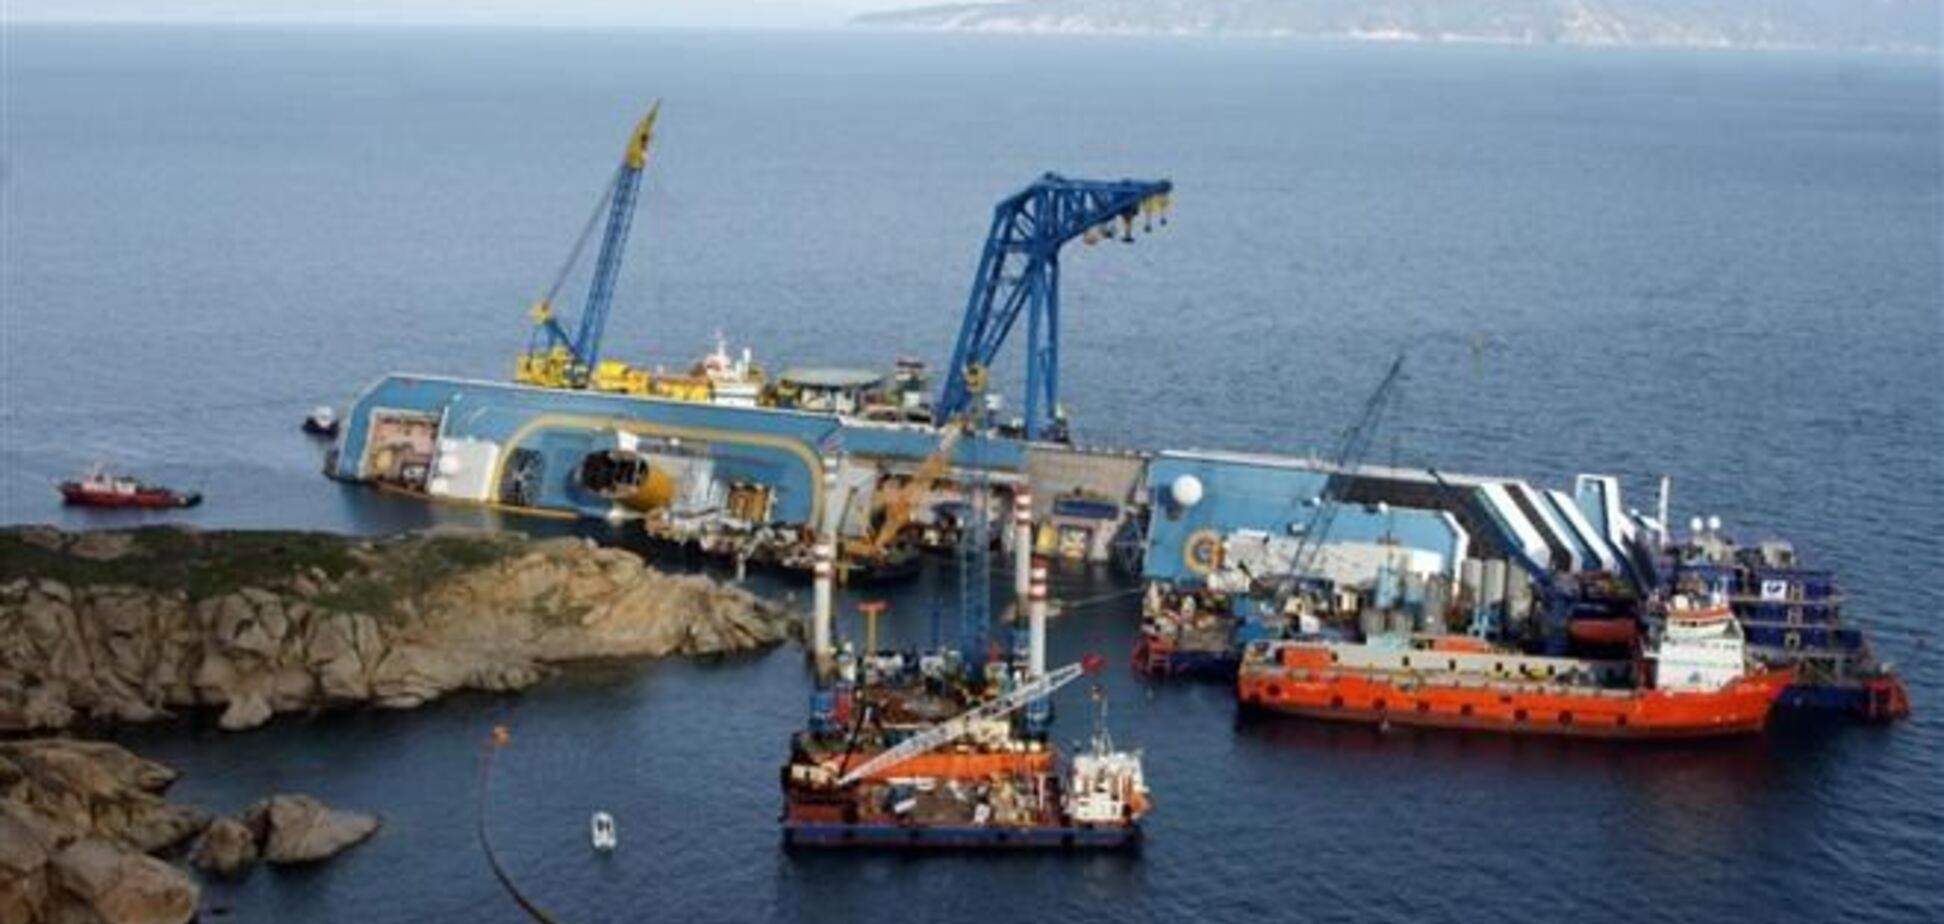 Costa Concordia отбуксируют не ранее июня 2014 года